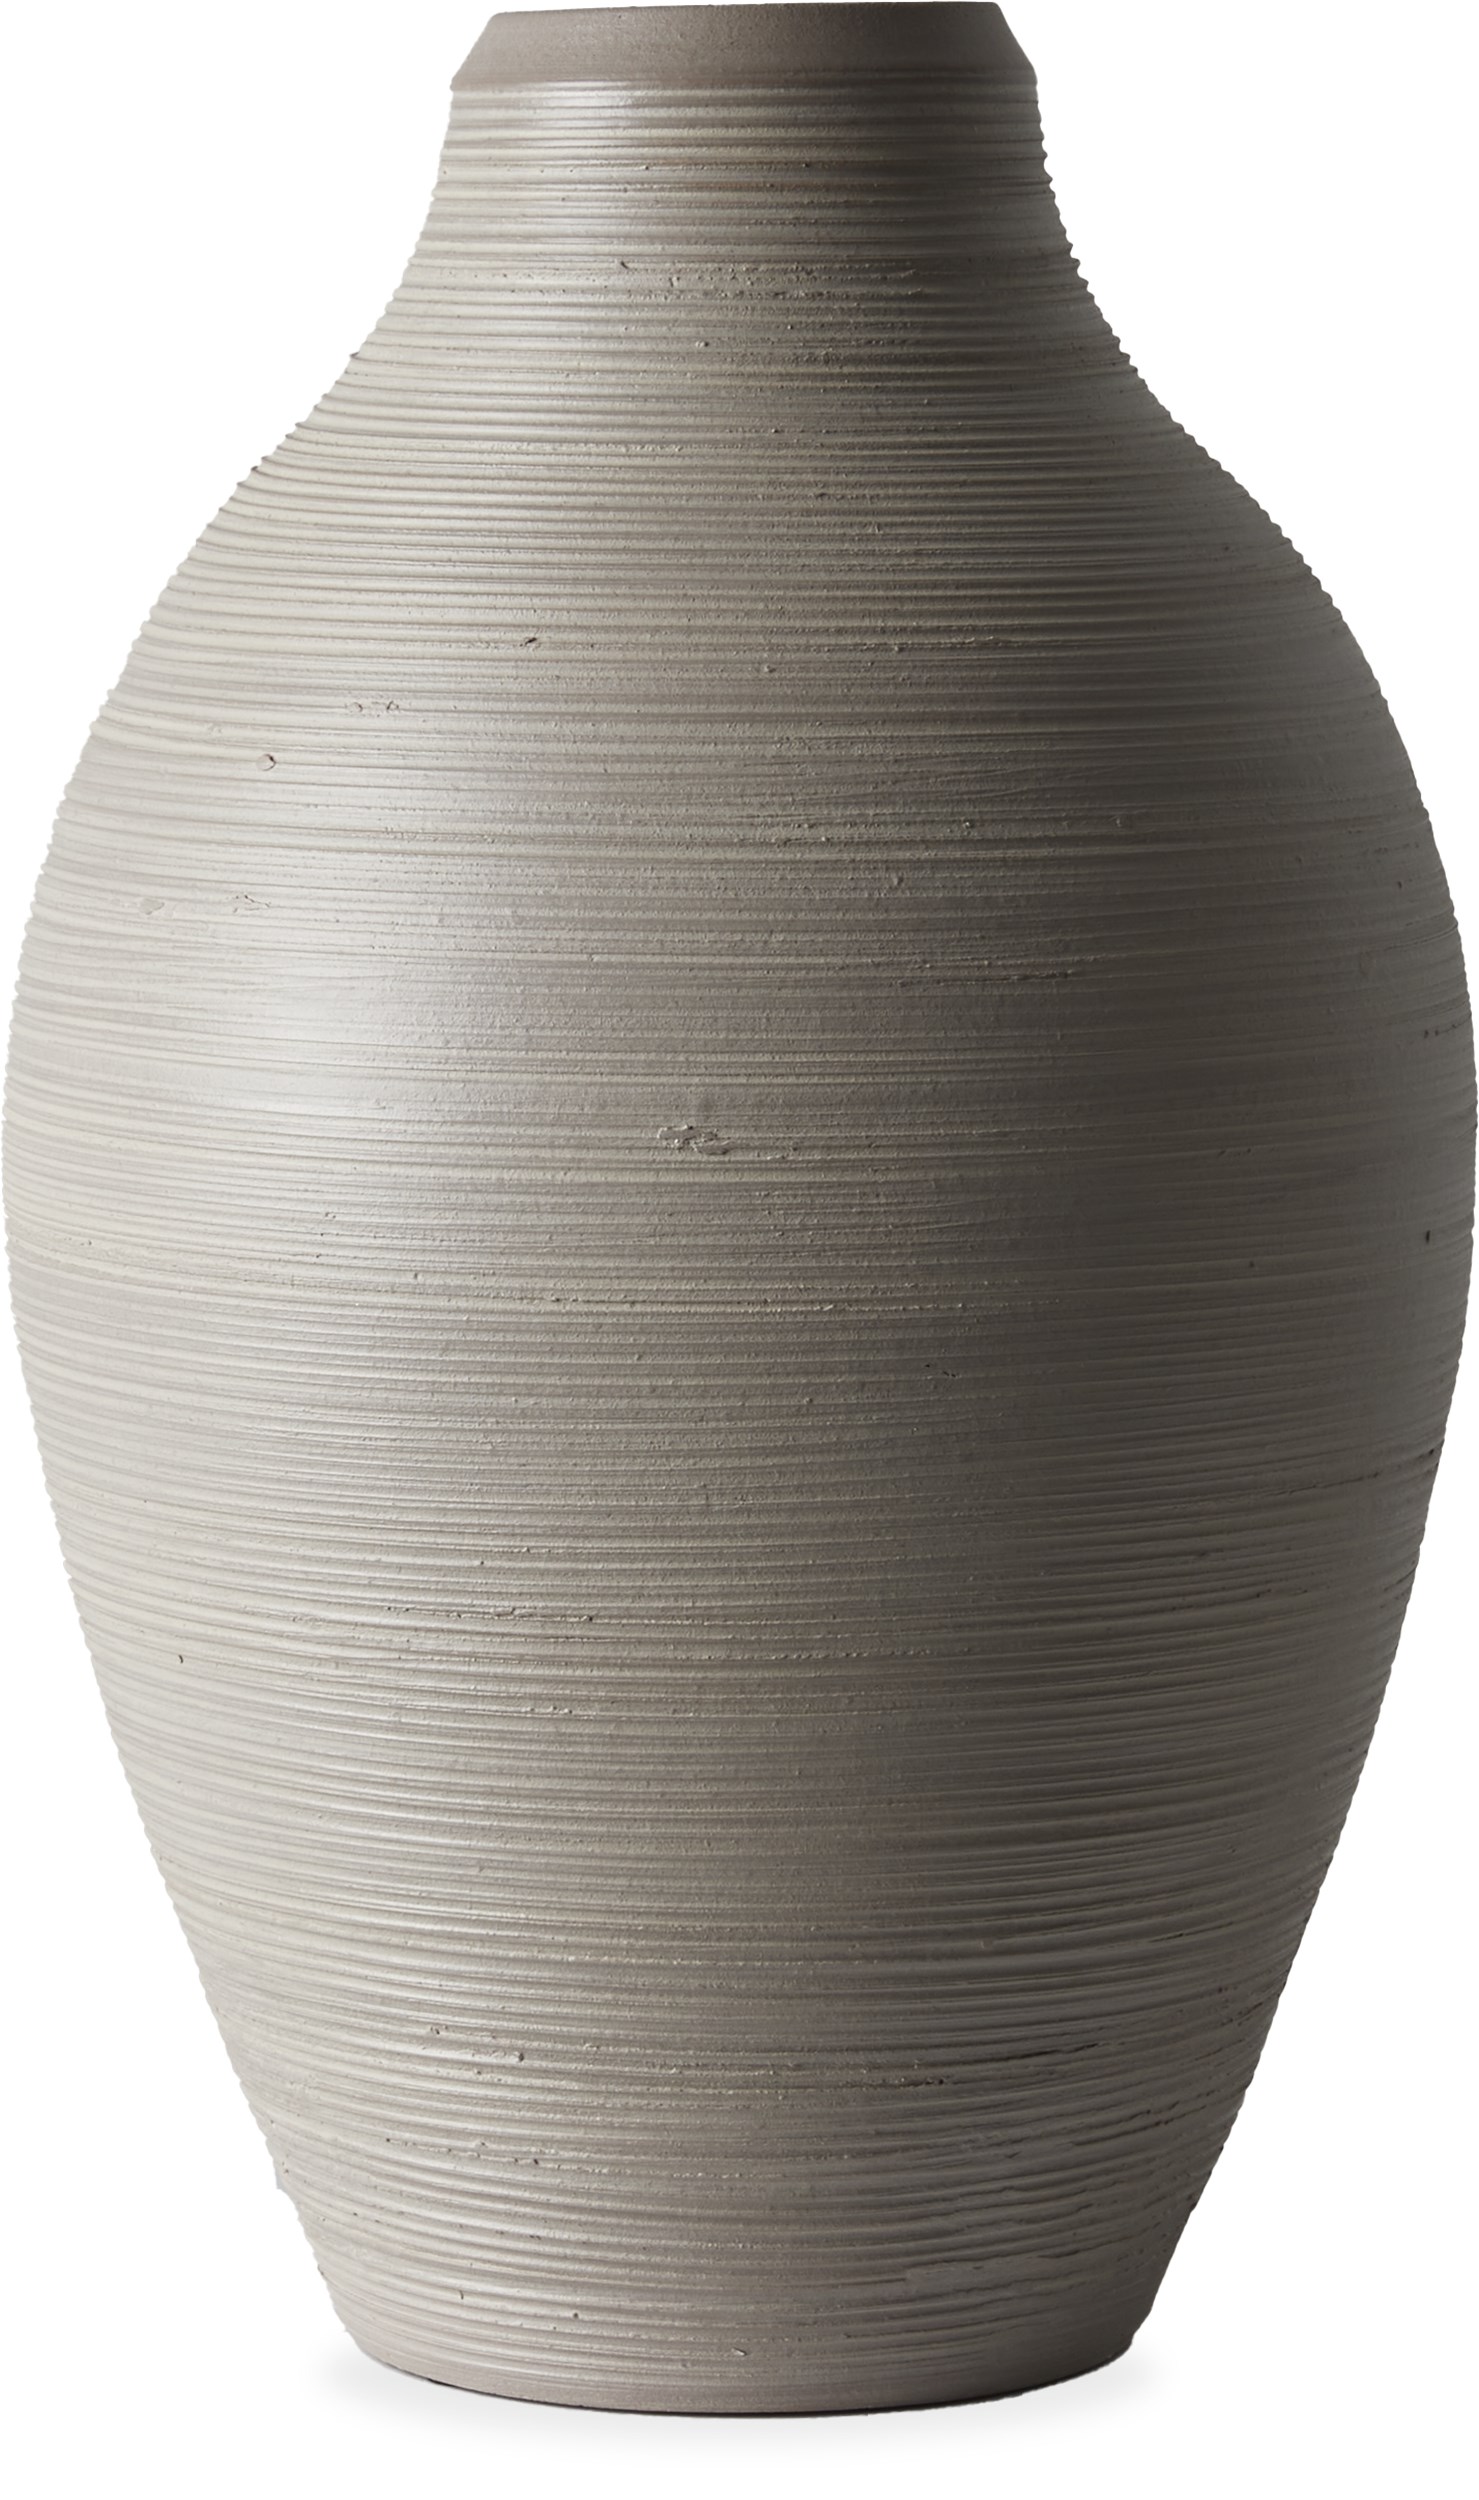 Gordo Vase 50 x 31 cm -